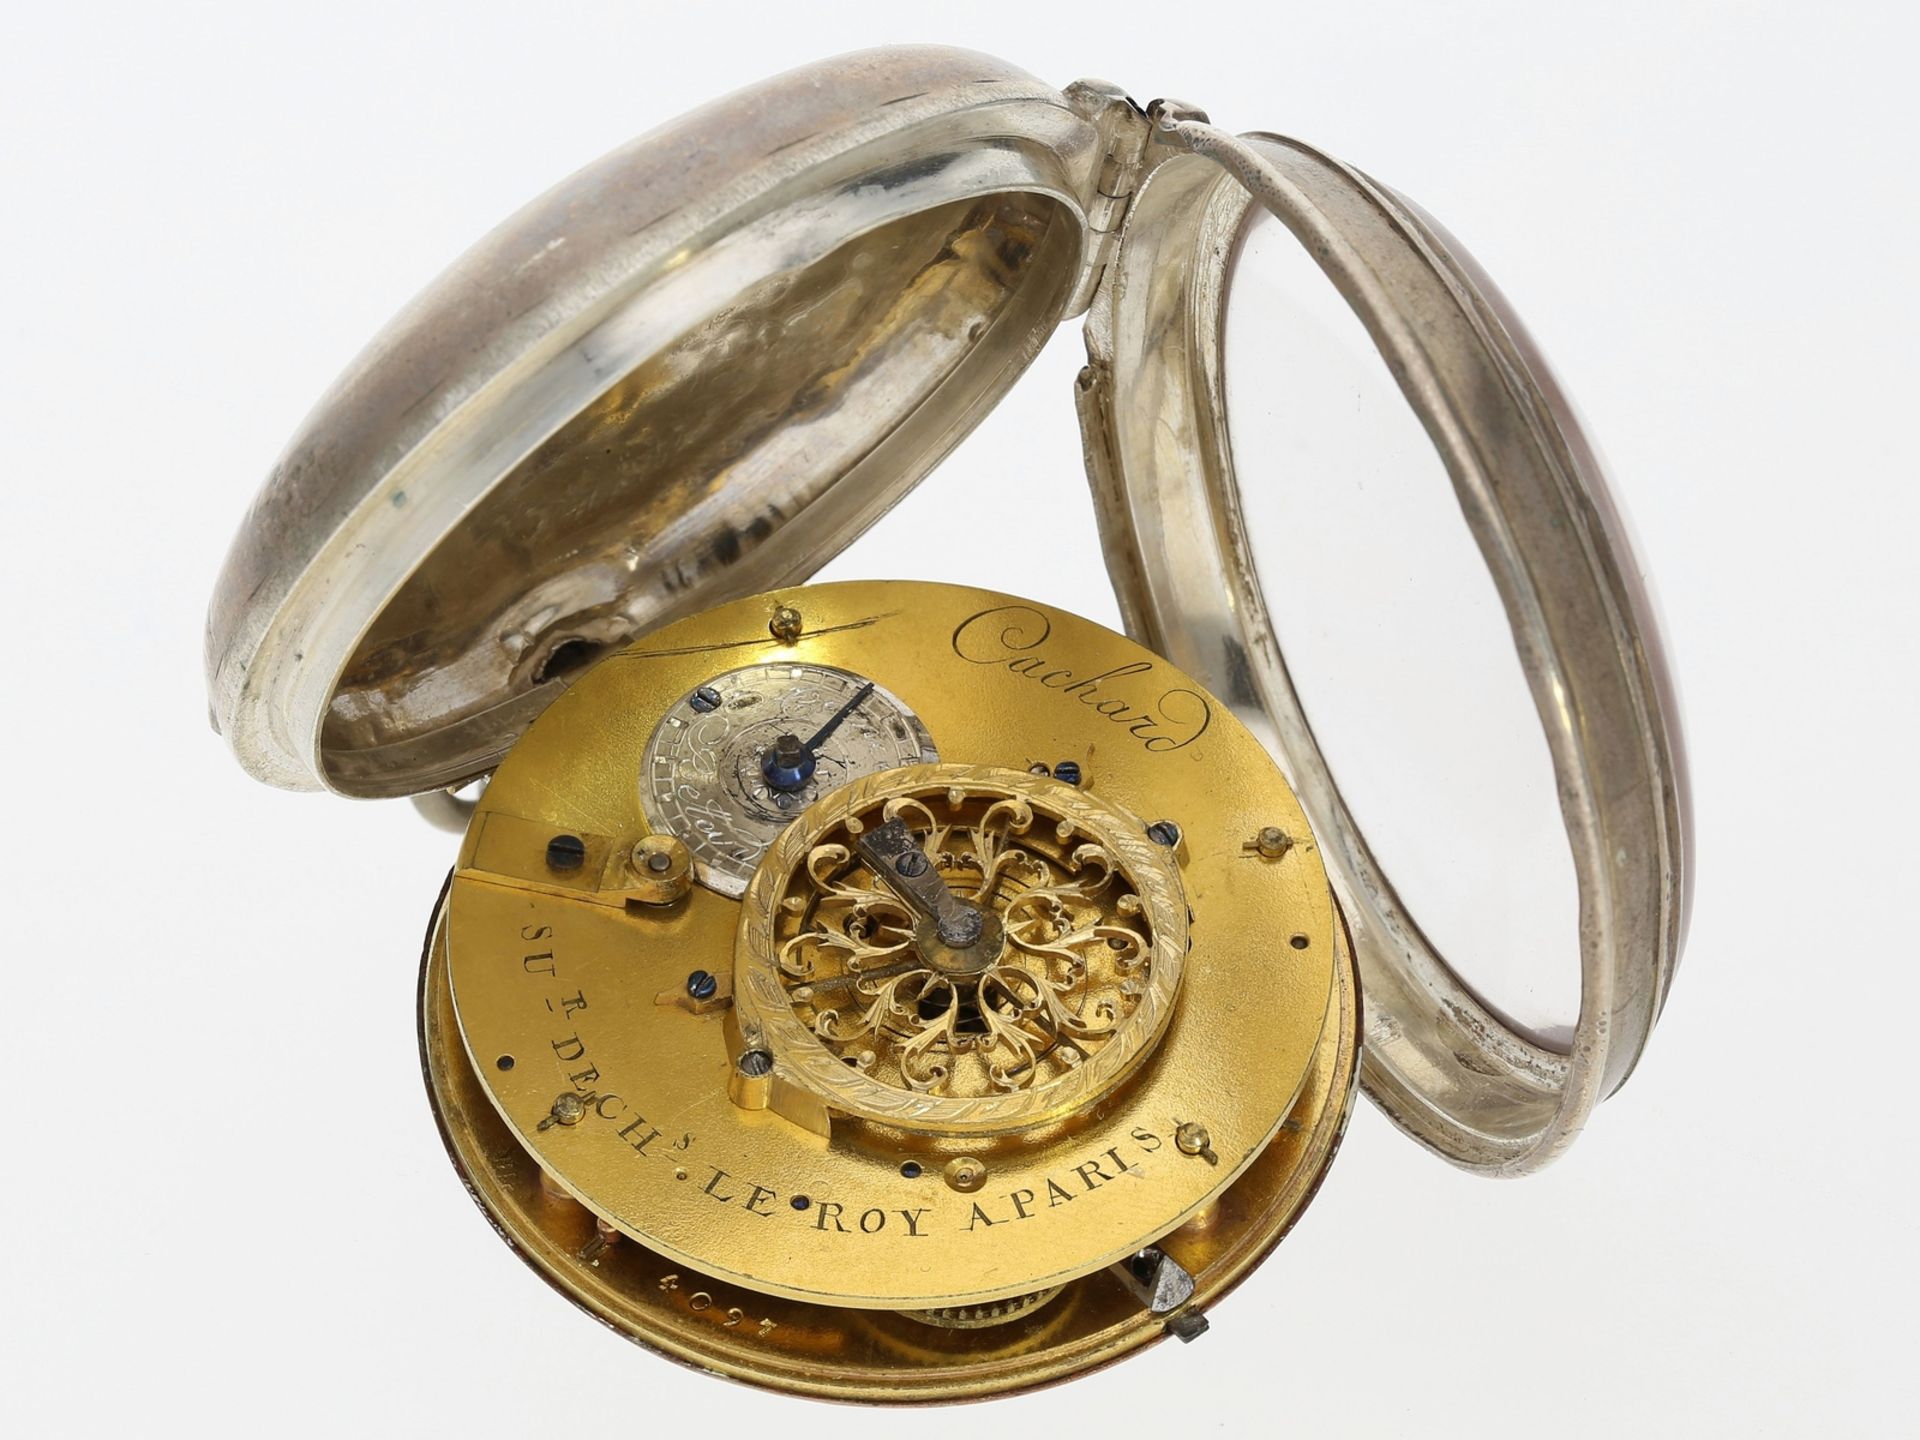 Taschenuhr: frühe französische Spindeluhr mit Zeigerdatum und sehr seltener Signatur, ca. 1800 - Image 4 of 4